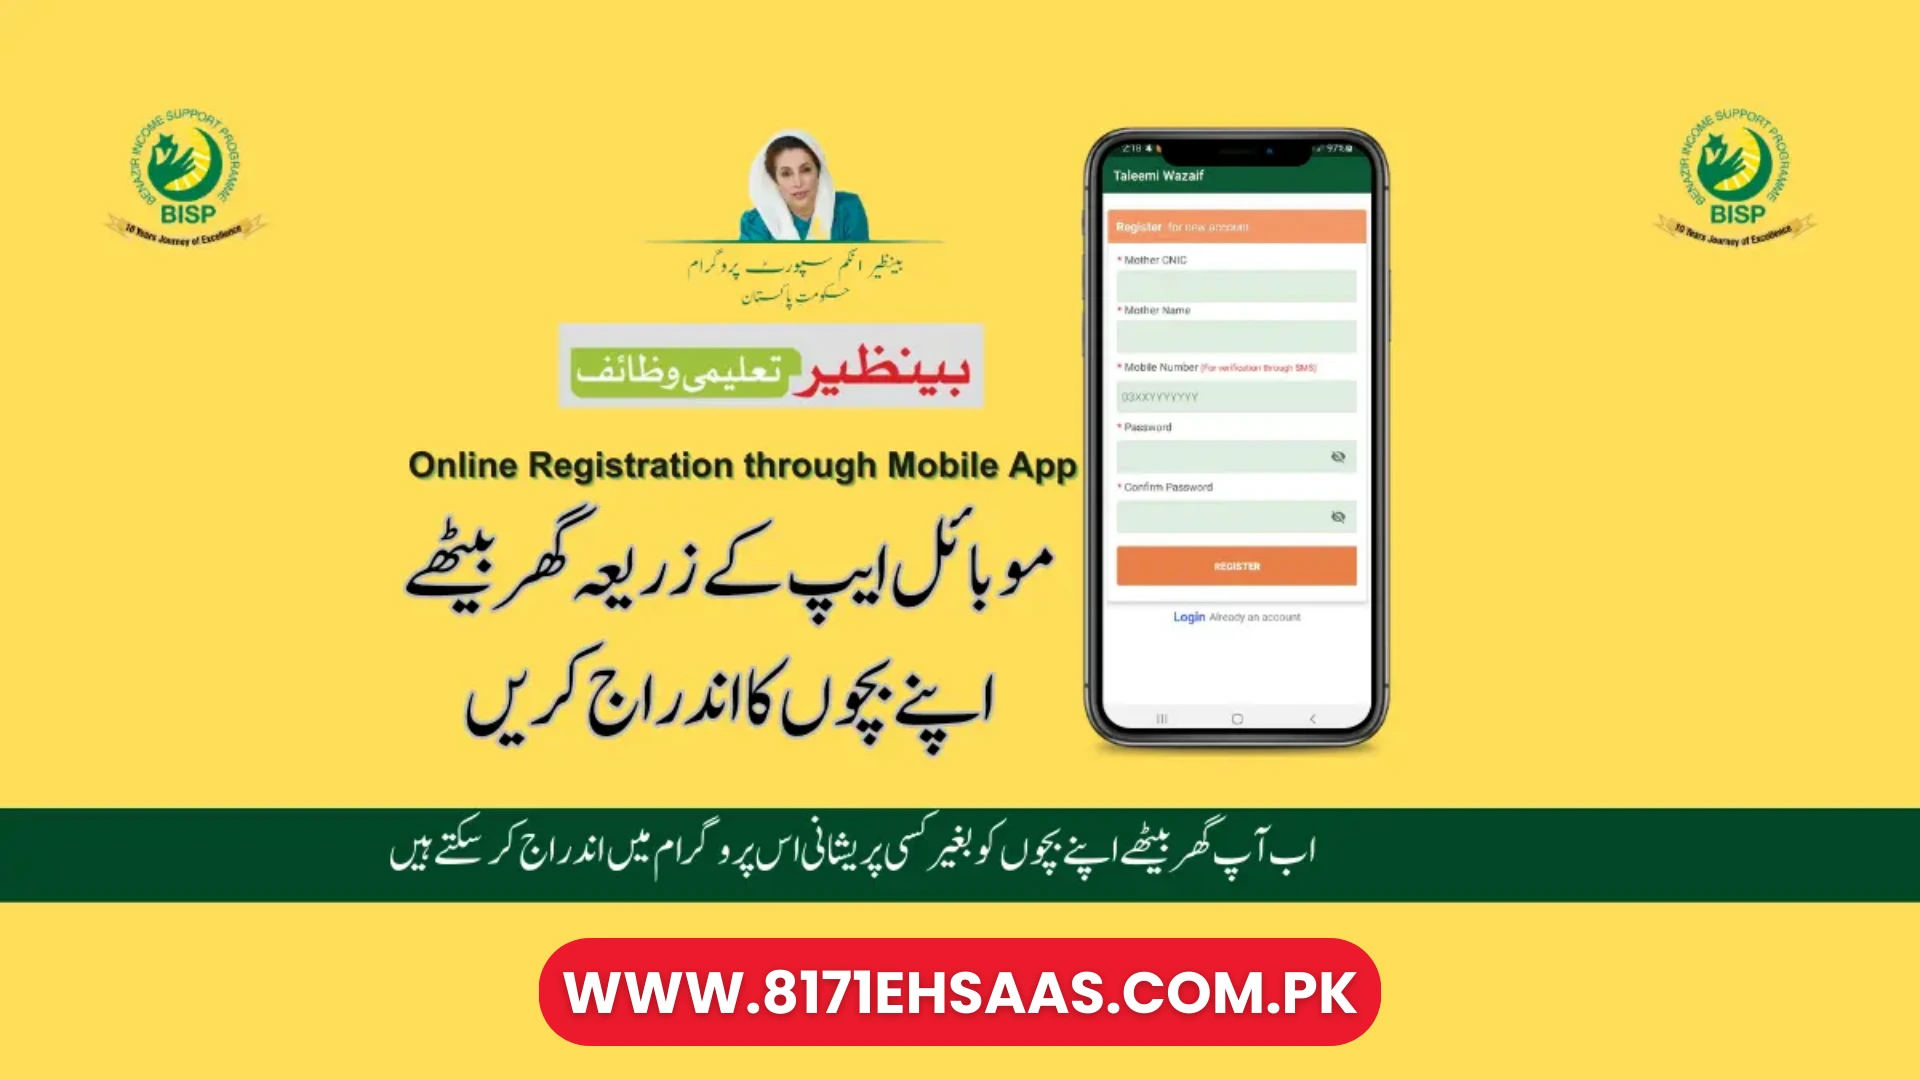 Waseela-e-Taleem Program Online Registration